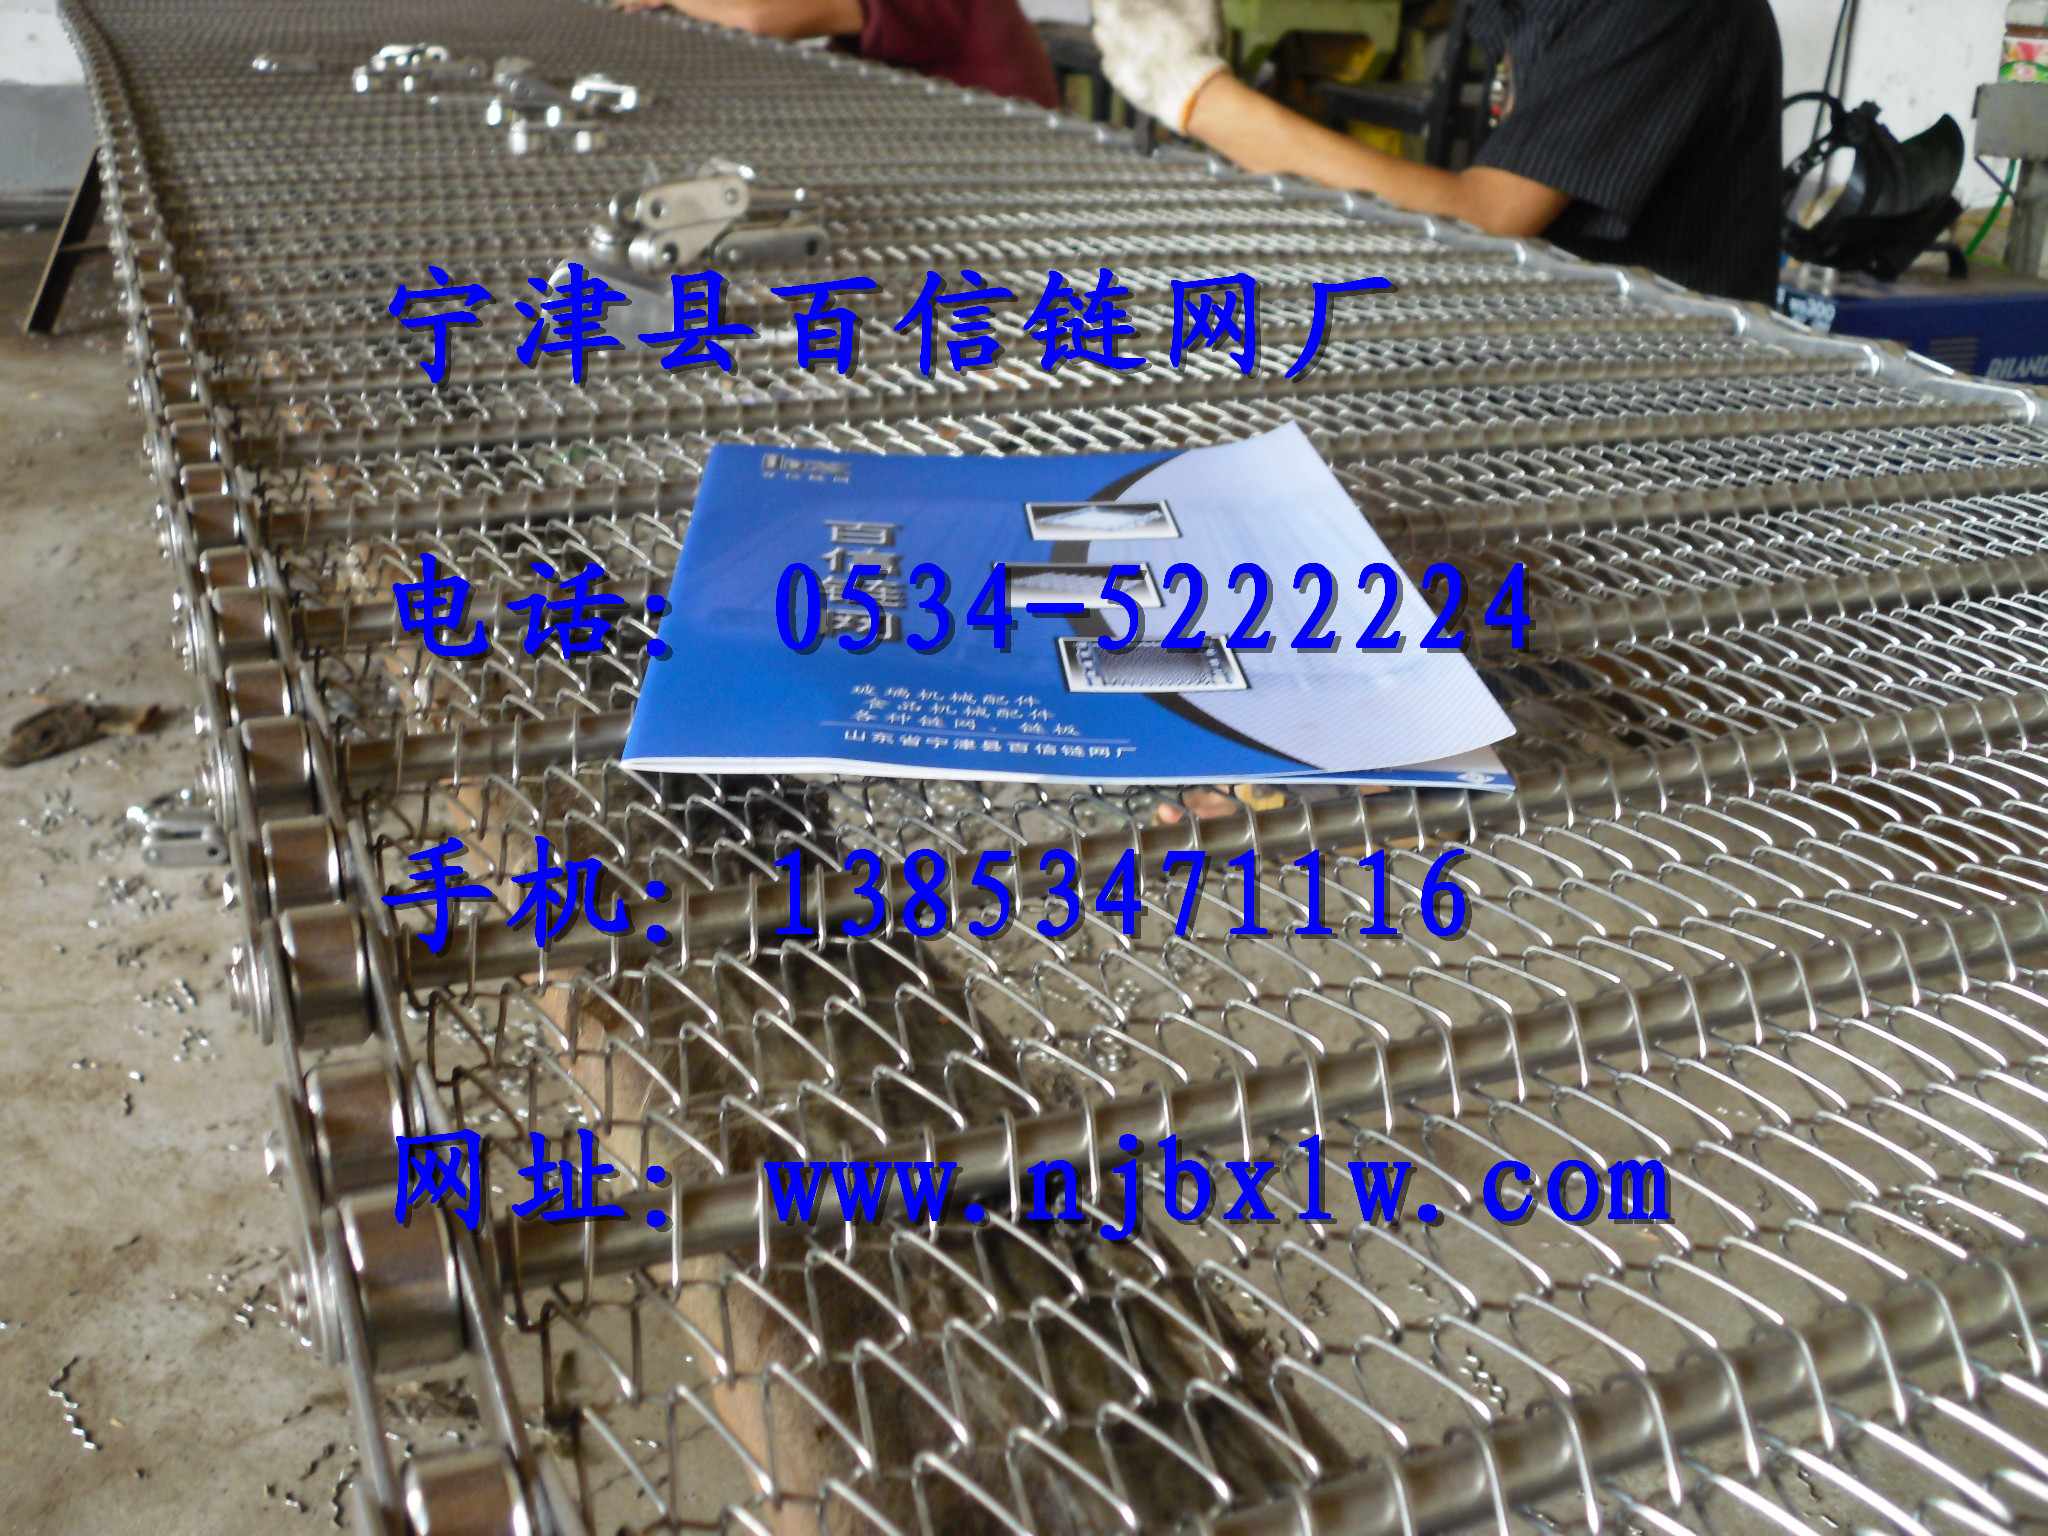 不锈钢网链是我厂最优质的产品，电话：0534-5222224